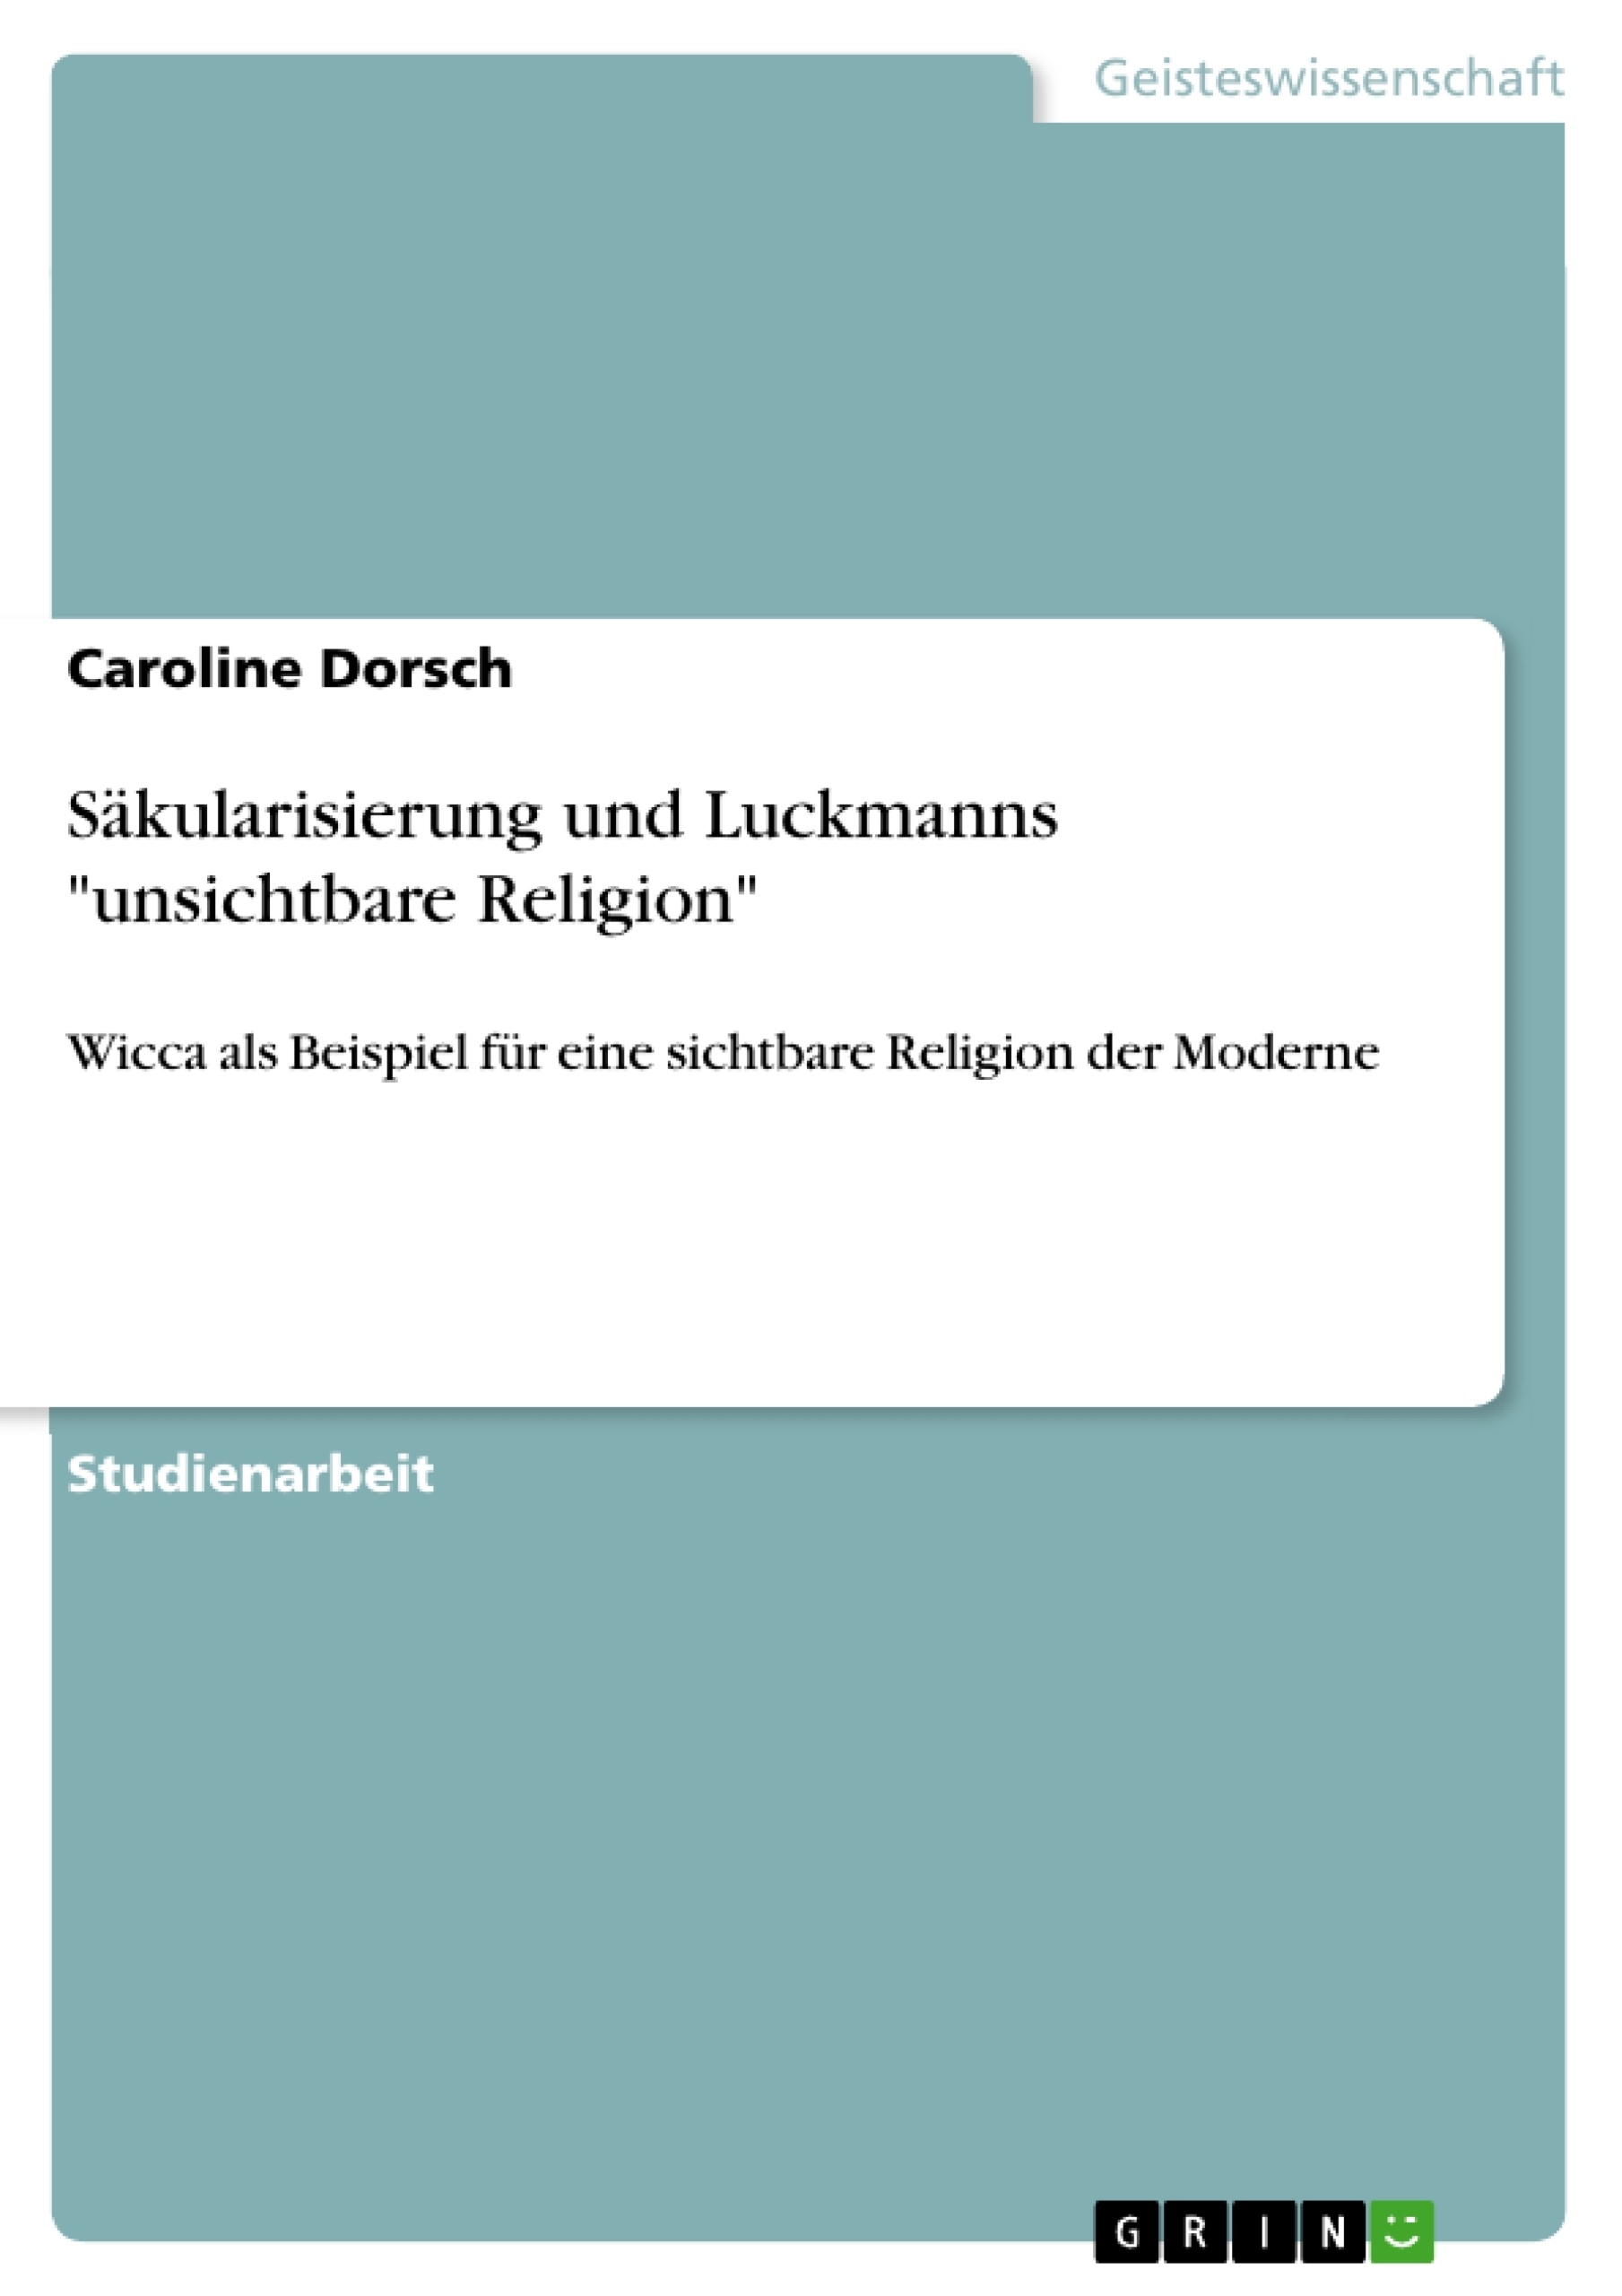 Title: Säkularisierung und Luckmanns "unsichtbare Religion"